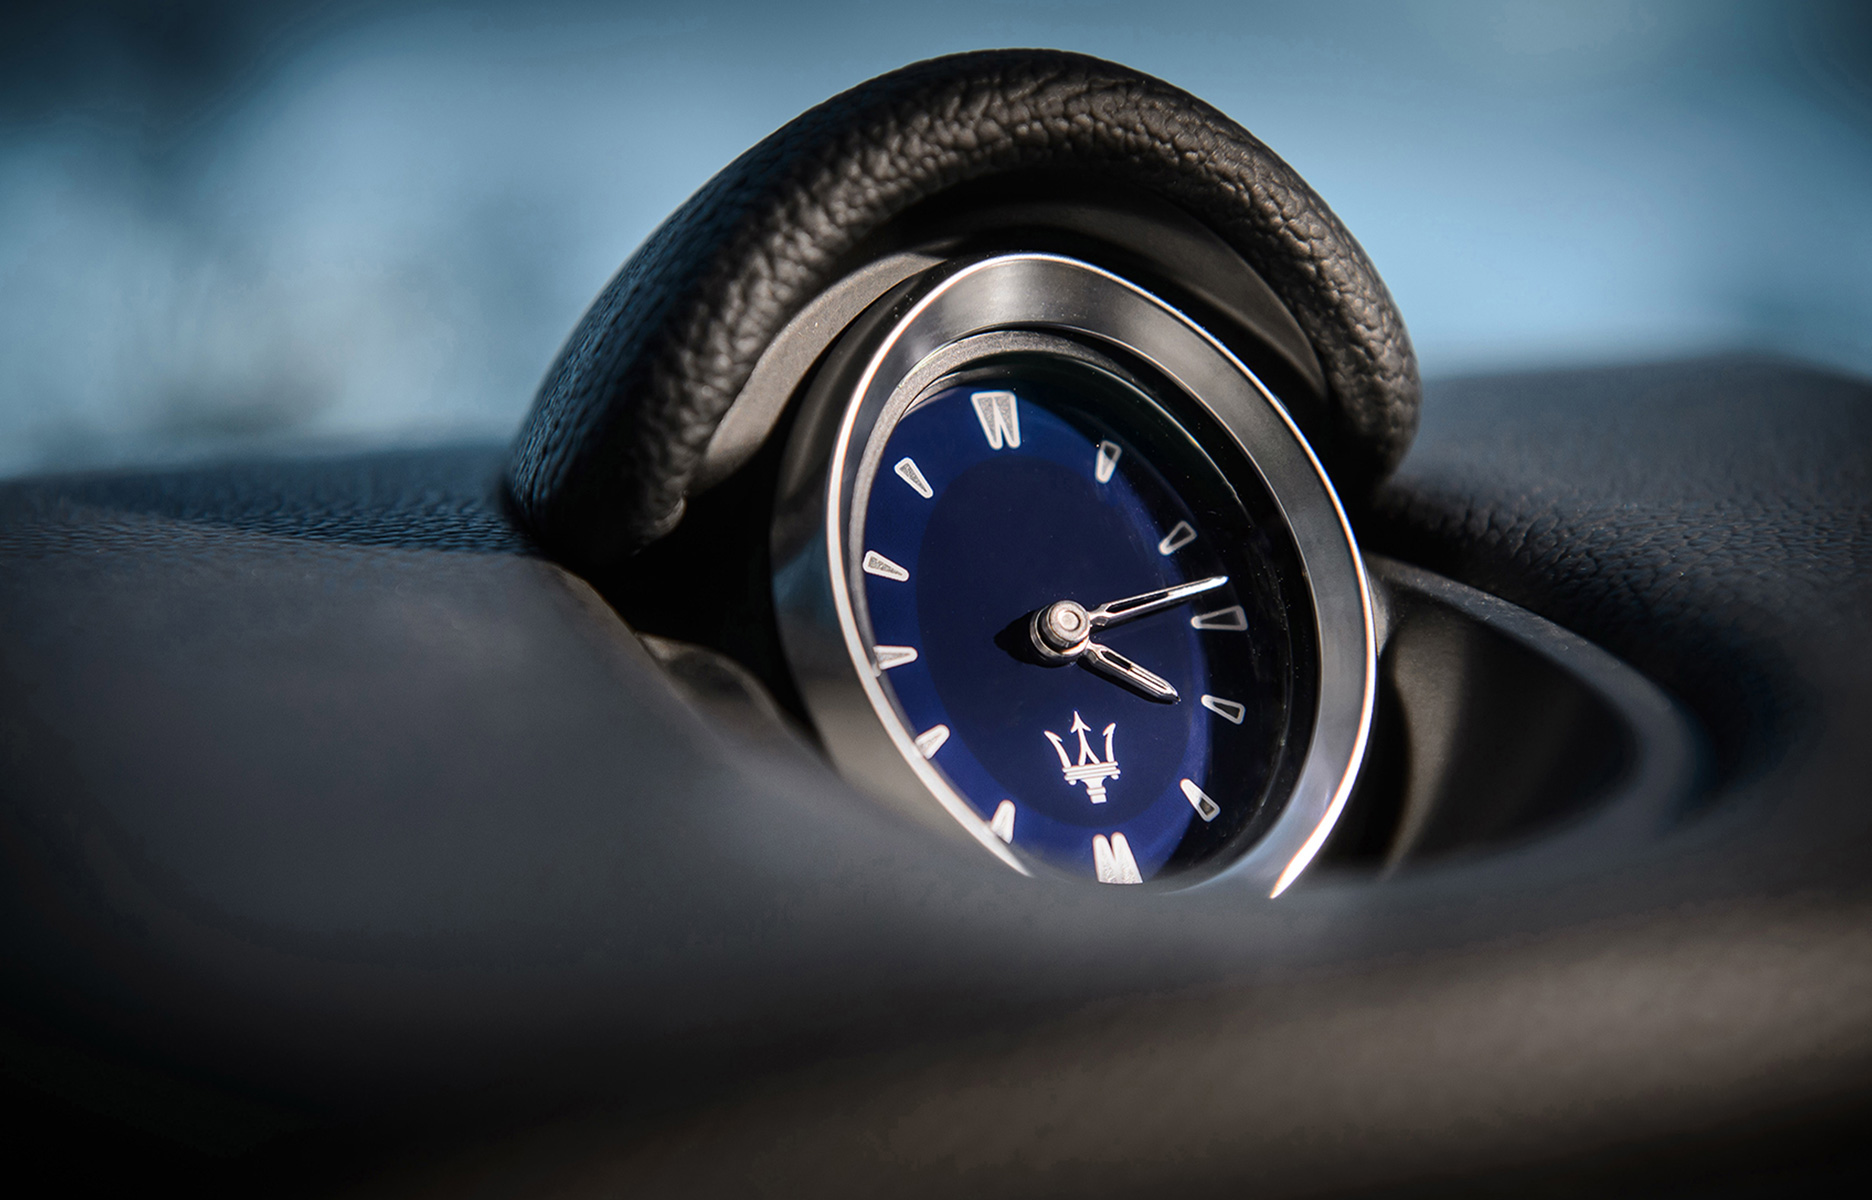 Montre horloge Jaeger pour tableau de bord voiture - Équipement auto